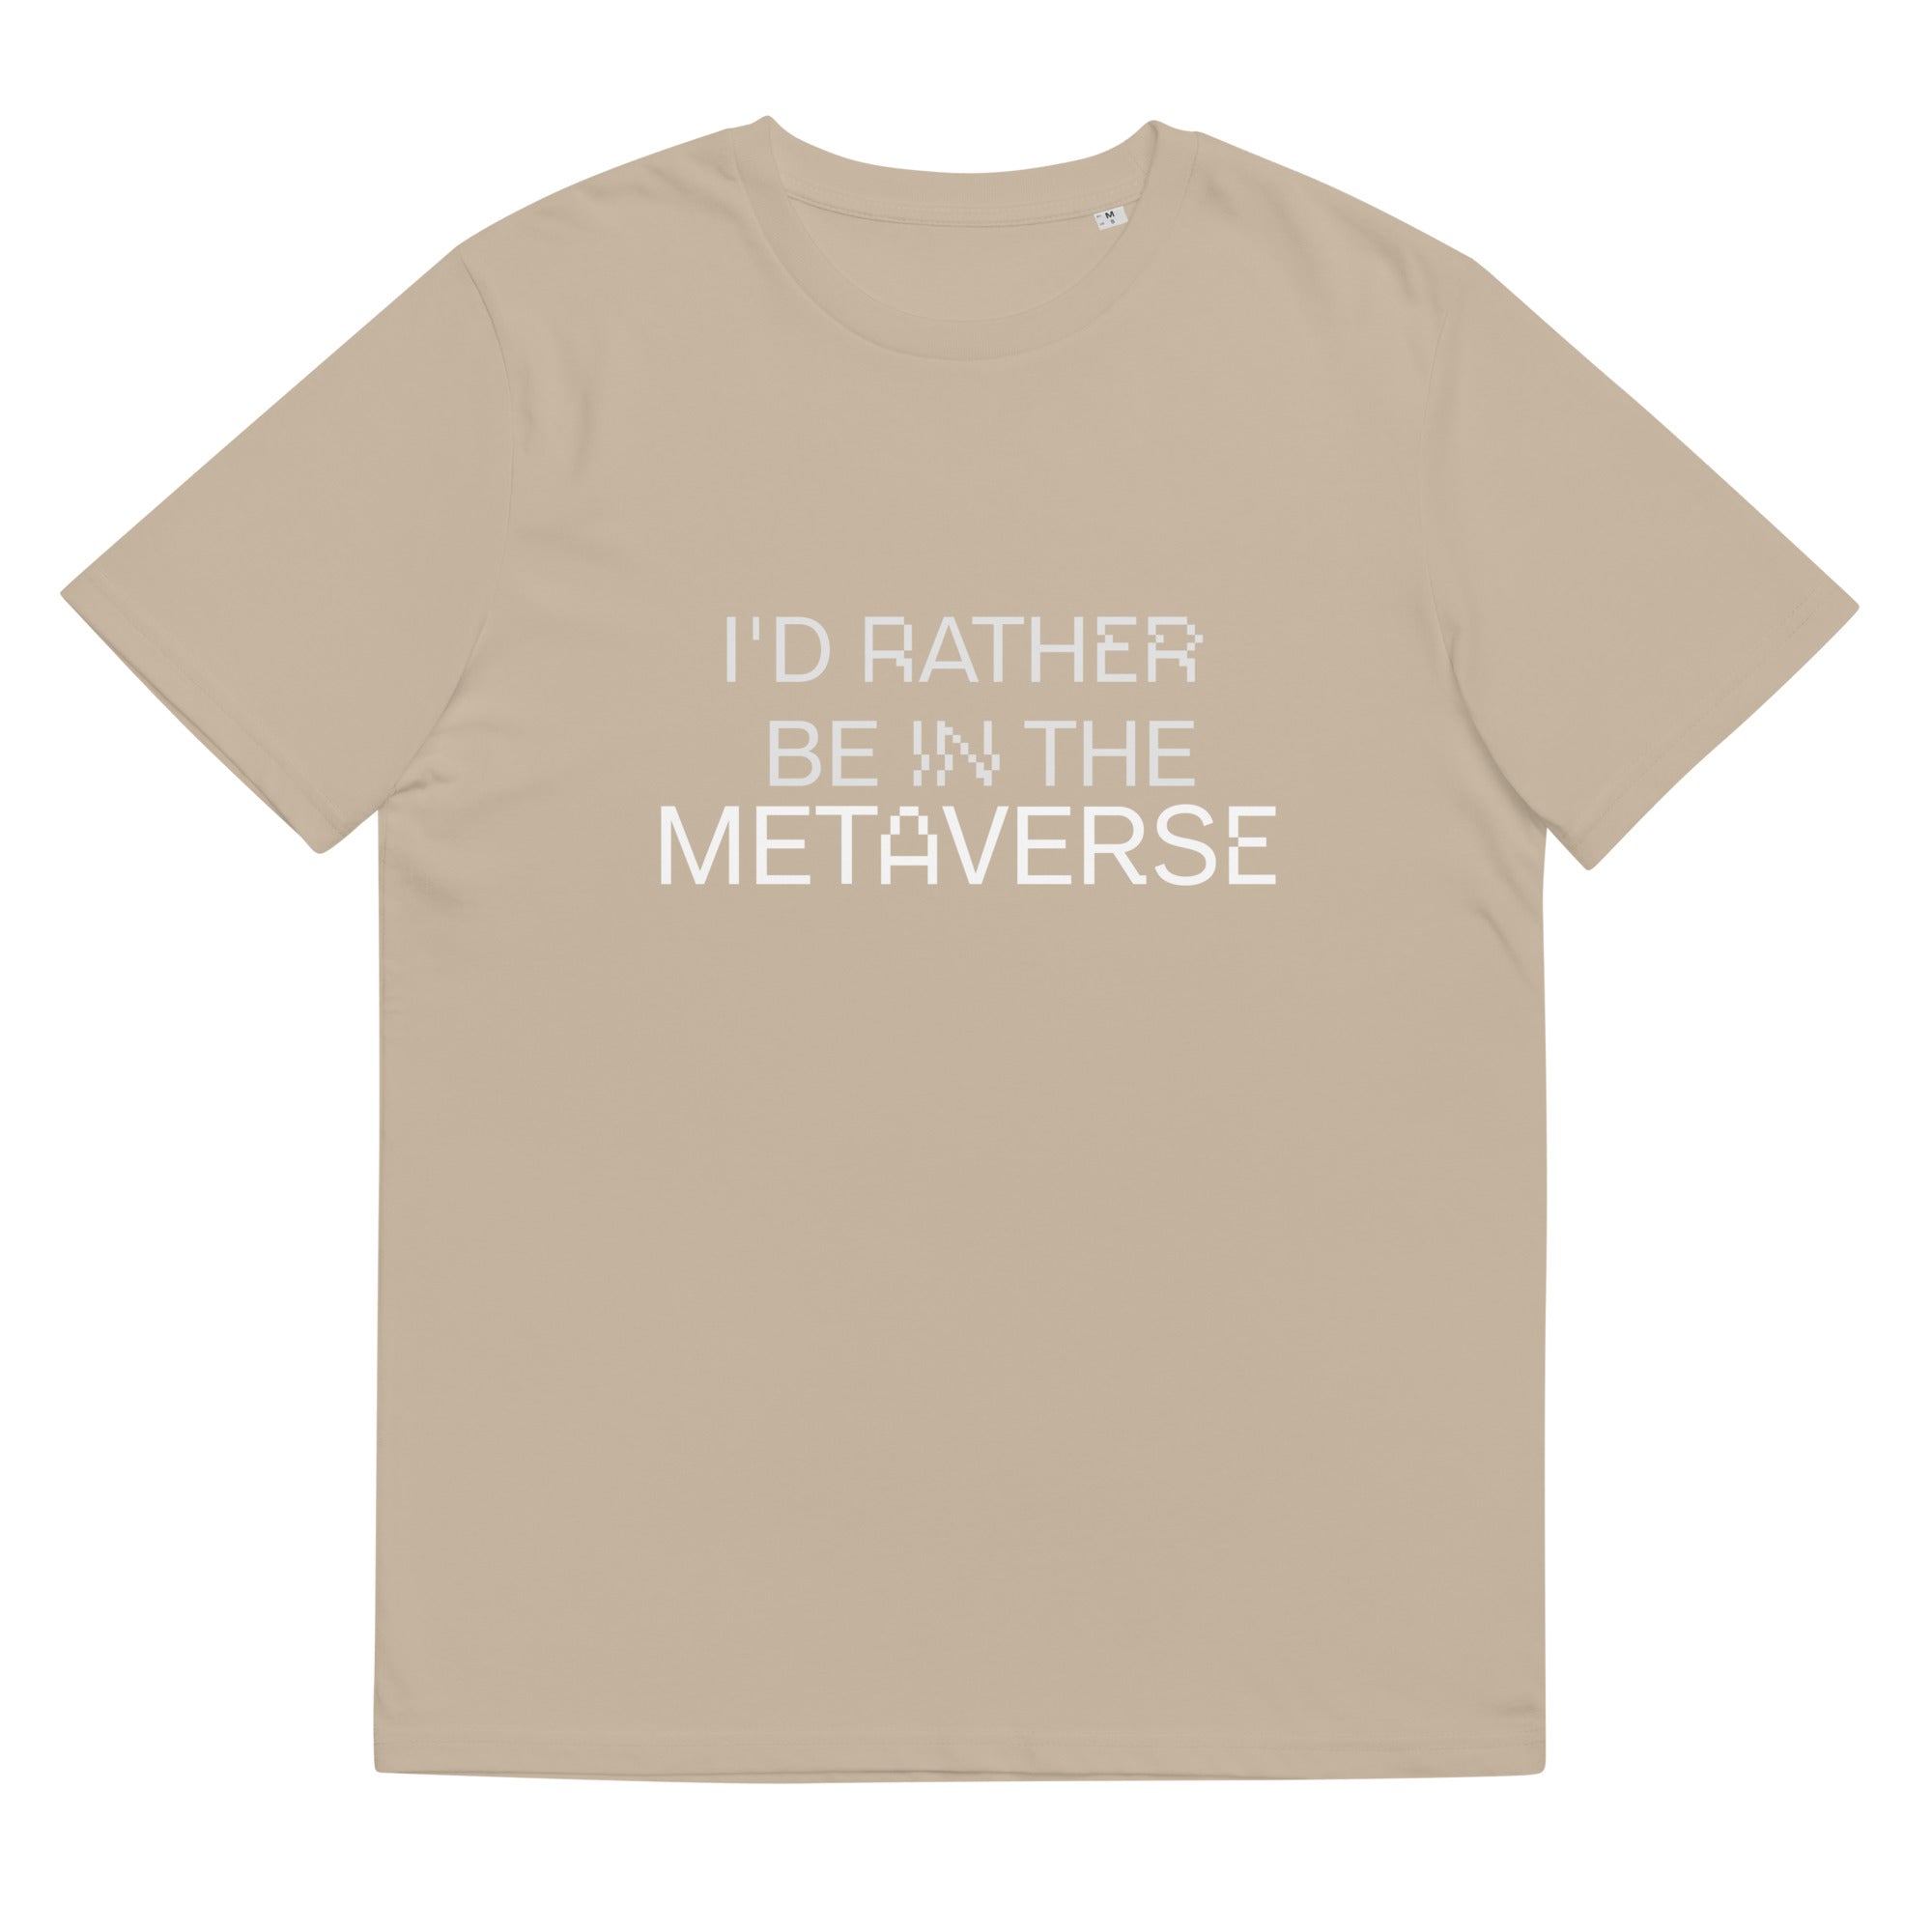 METAVERSE organic cotton t-shirt